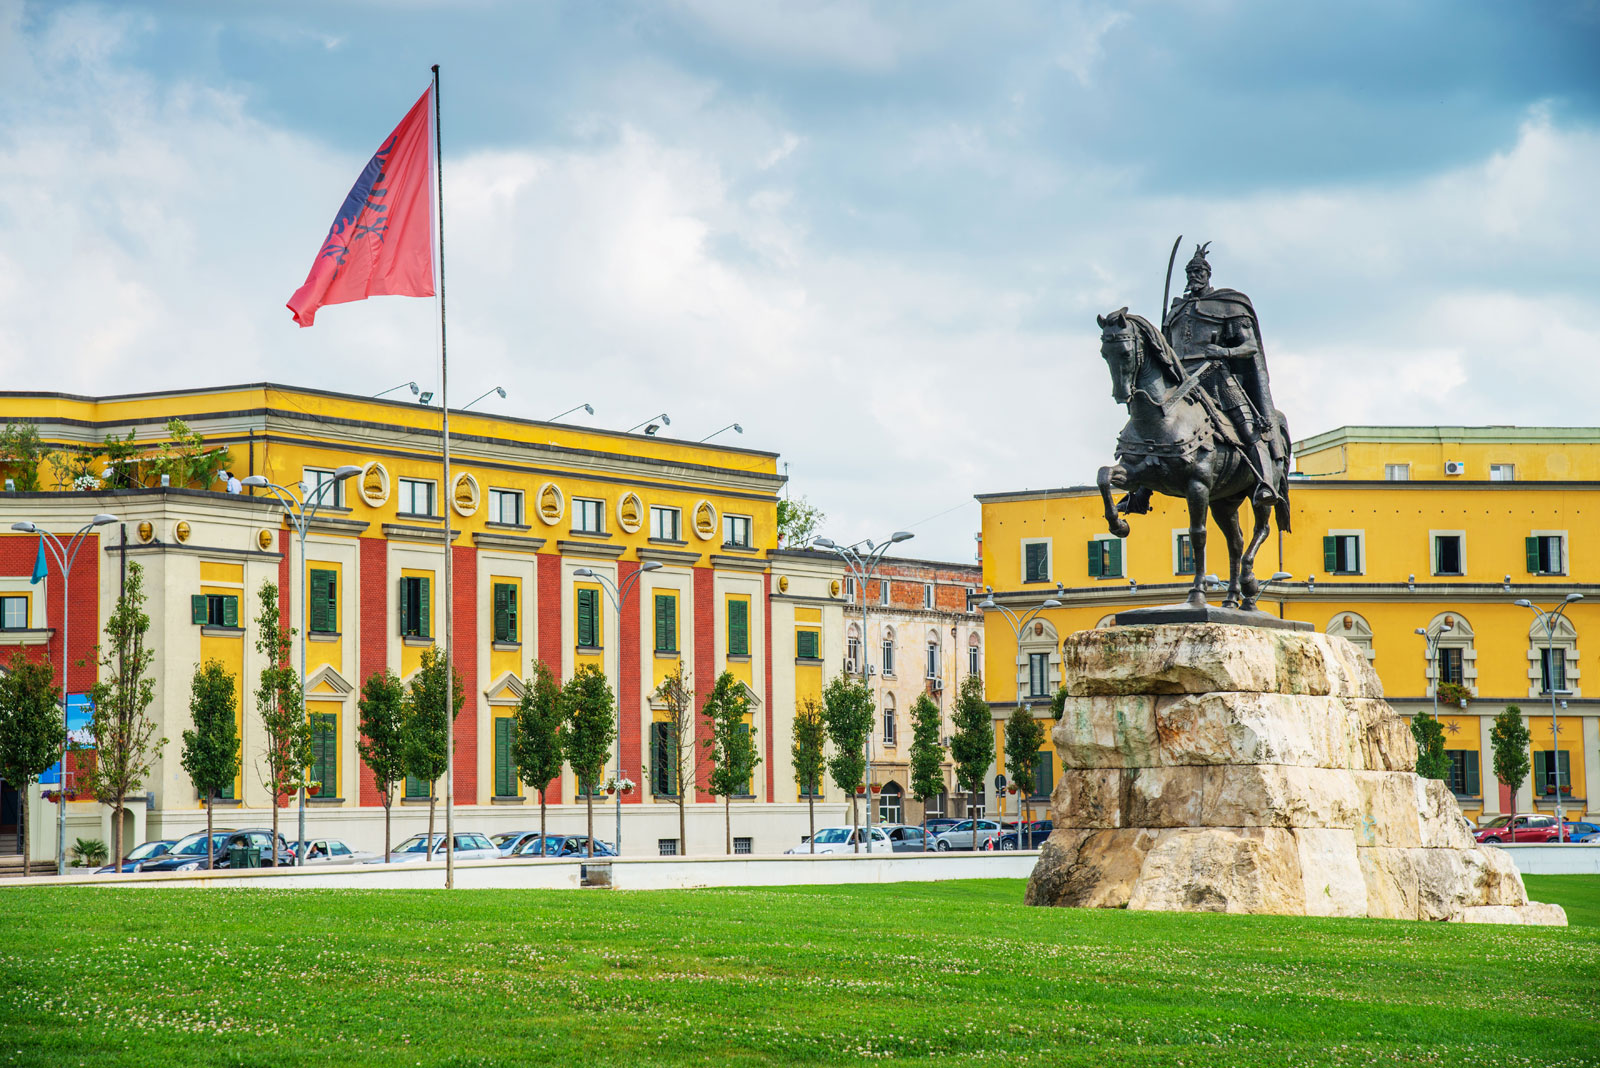 Partner city – Tirana